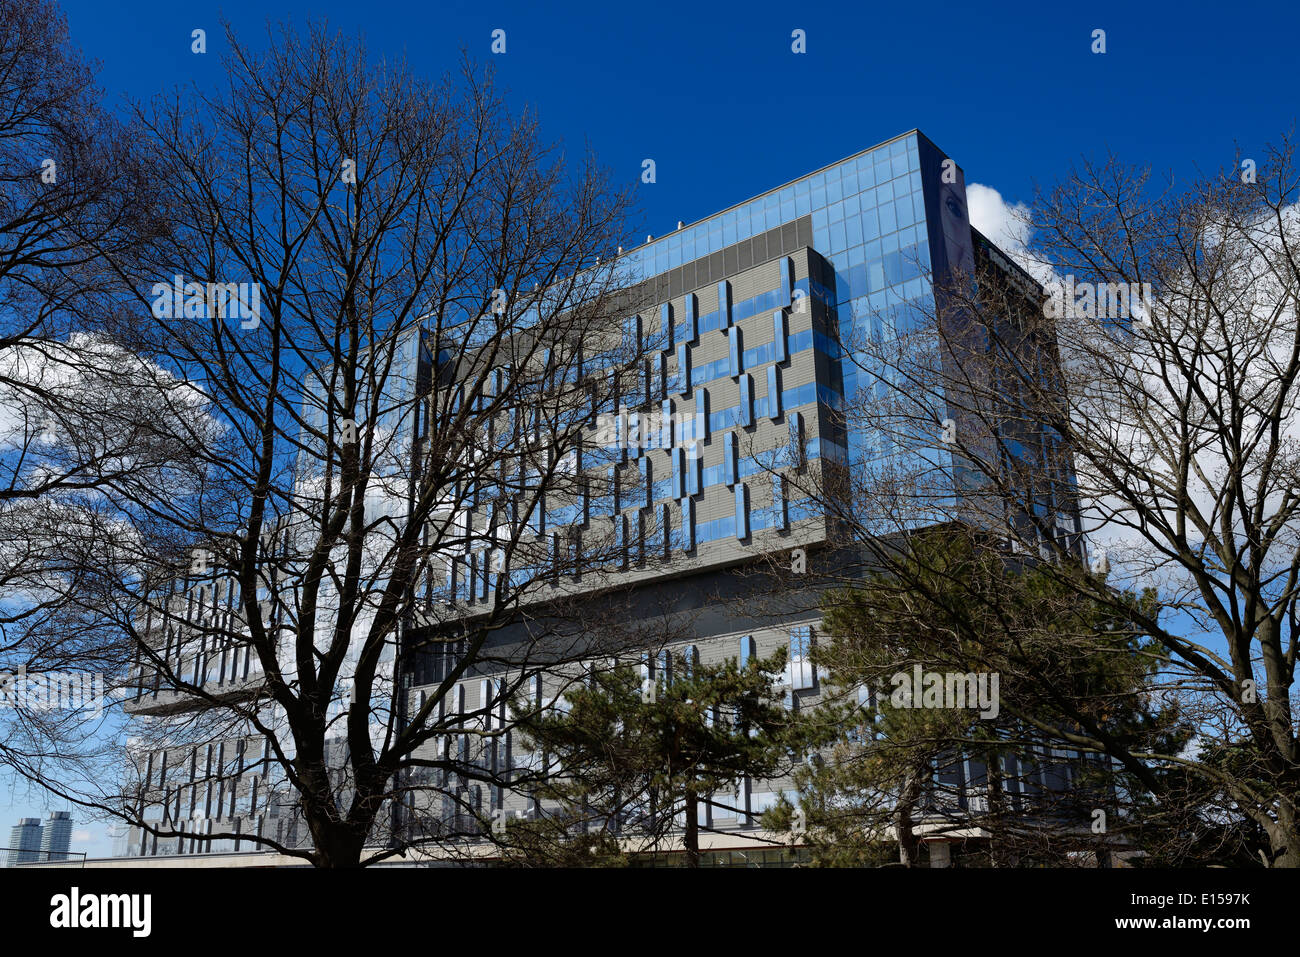 Recién construido hospital azul bridgepoint edificio del centro de salud activa toronto Foto de stock